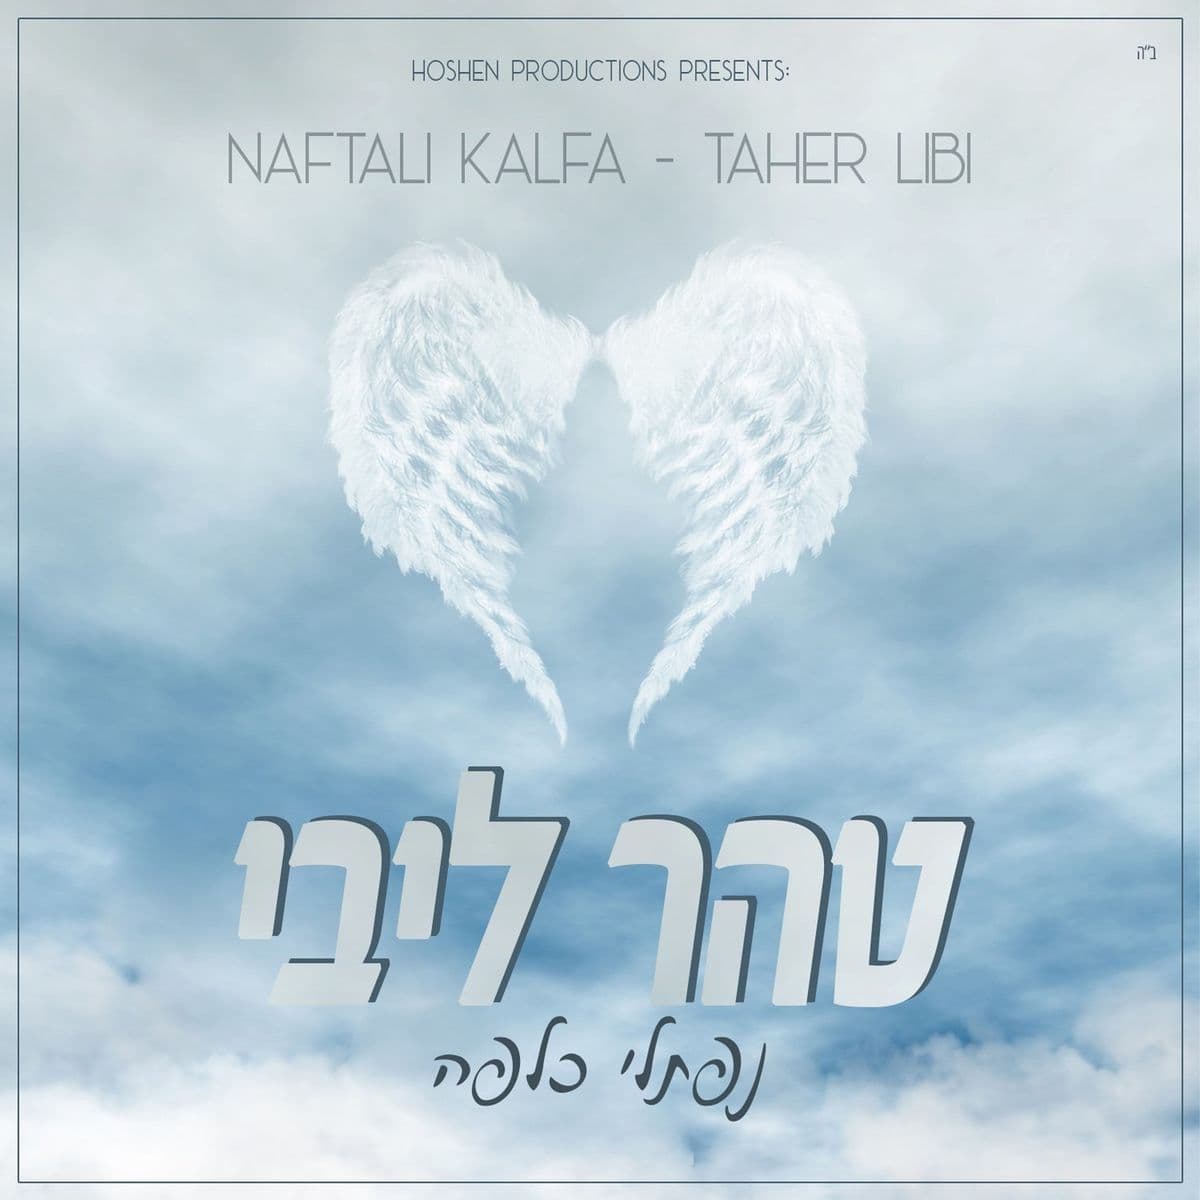 נפתלי כלפה - טהר ליבי - אלבום מלא - Naftali Kalfa - Taher Libi